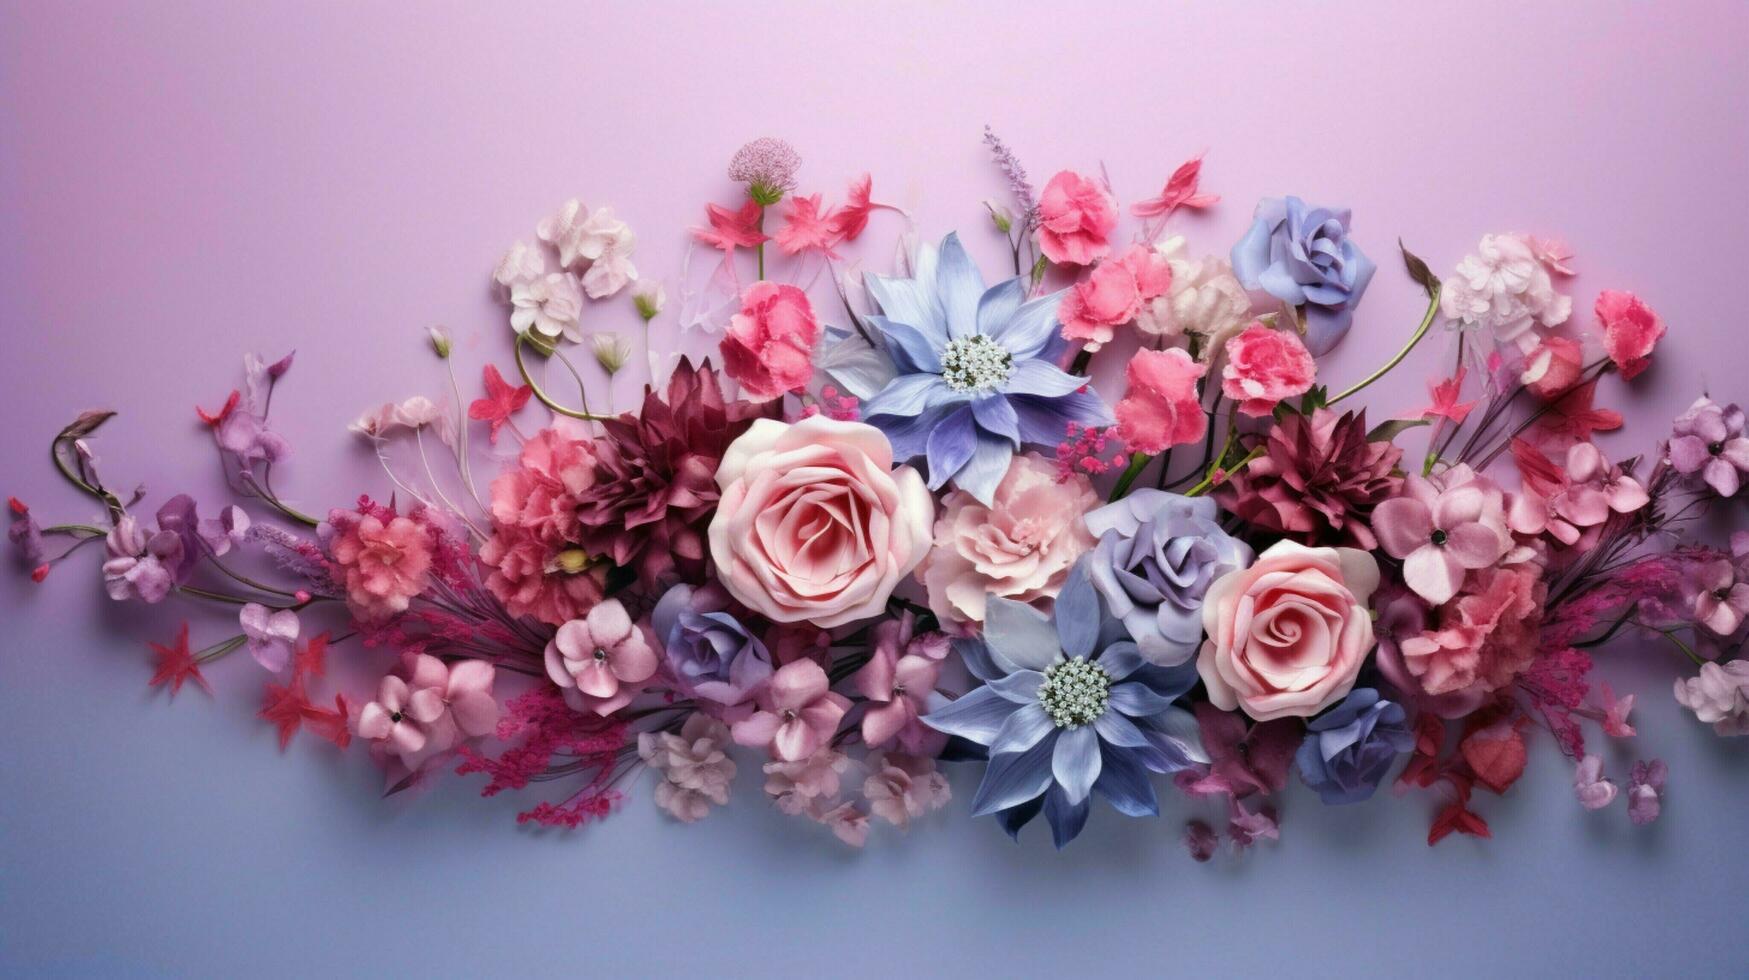 natur blomma blomma bukett bakgrund roman växt dekor foto